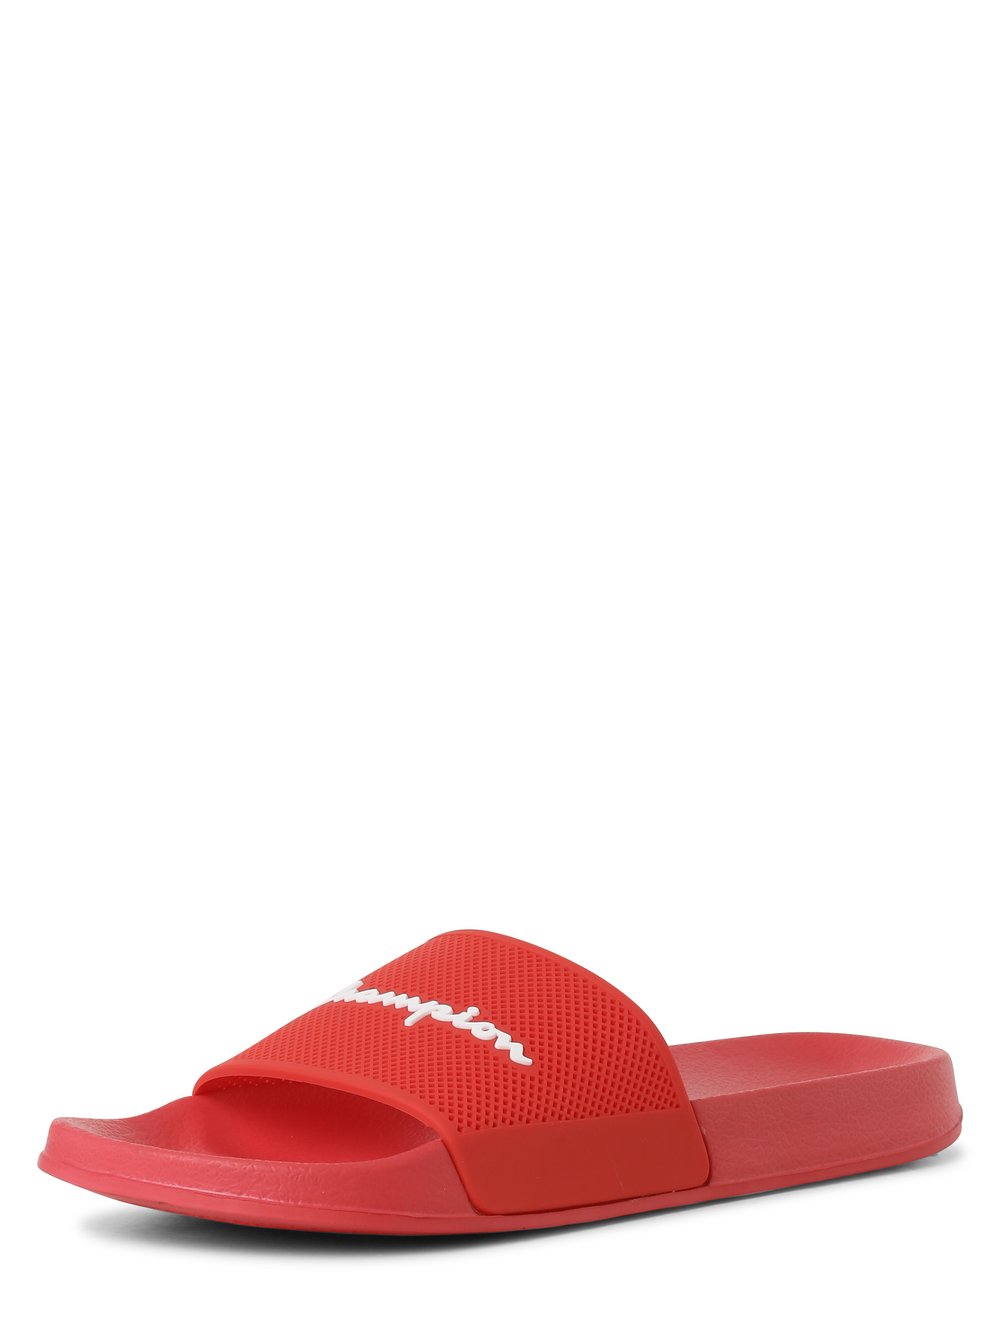 Champion - Męskie pantofle kąpielowe, czerwony